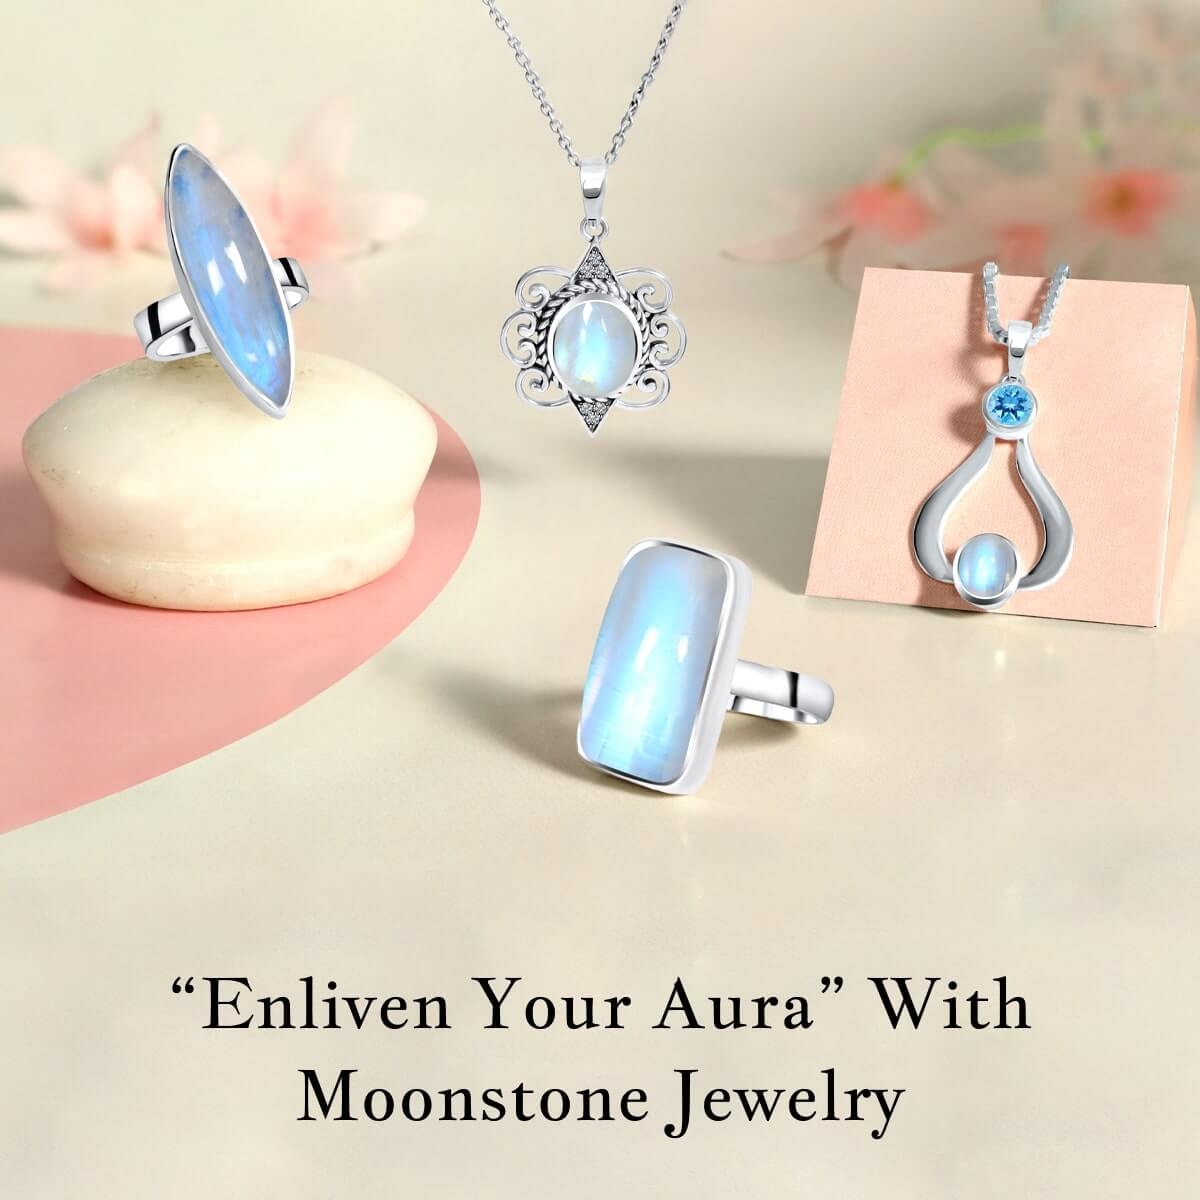 Plethora of Moonstone Jewelry